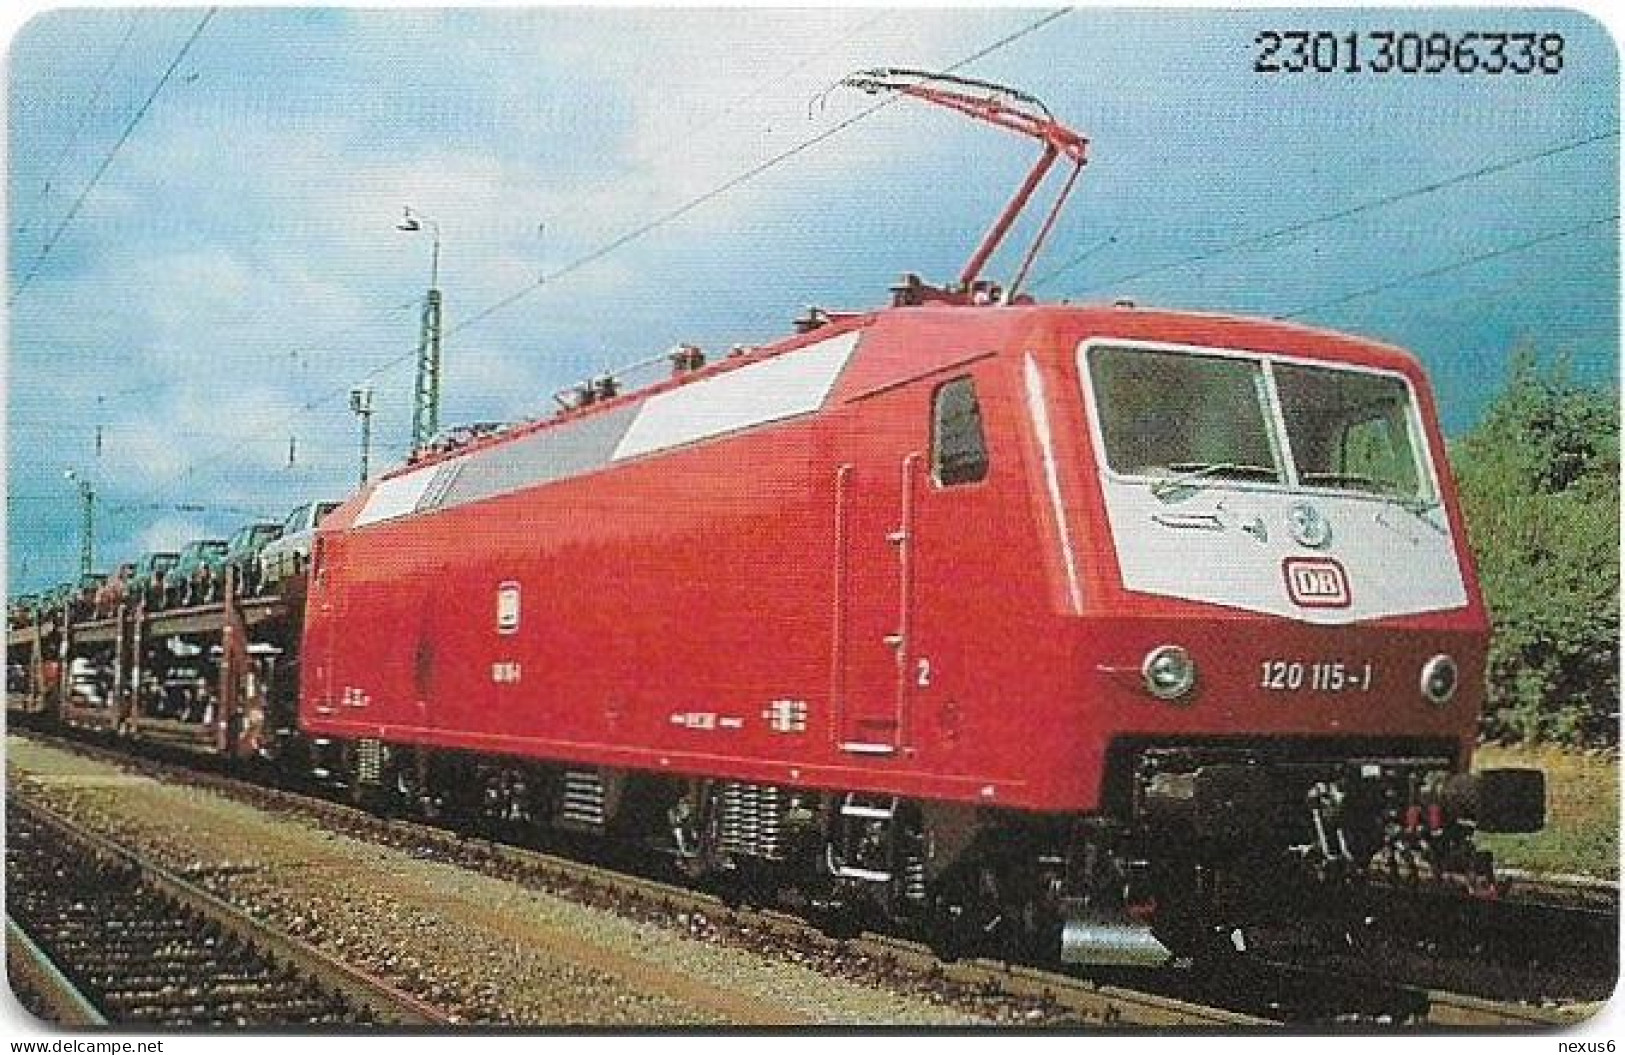 Germany - Deutsche Bundesbahn - E-Lok-Parade 1 (Baureihe 120) - O 0426 - 12.1992, 6DM, 3.000ex, Mint - O-Series: Kundenserie Vom Sammlerservice Ausgeschlossen